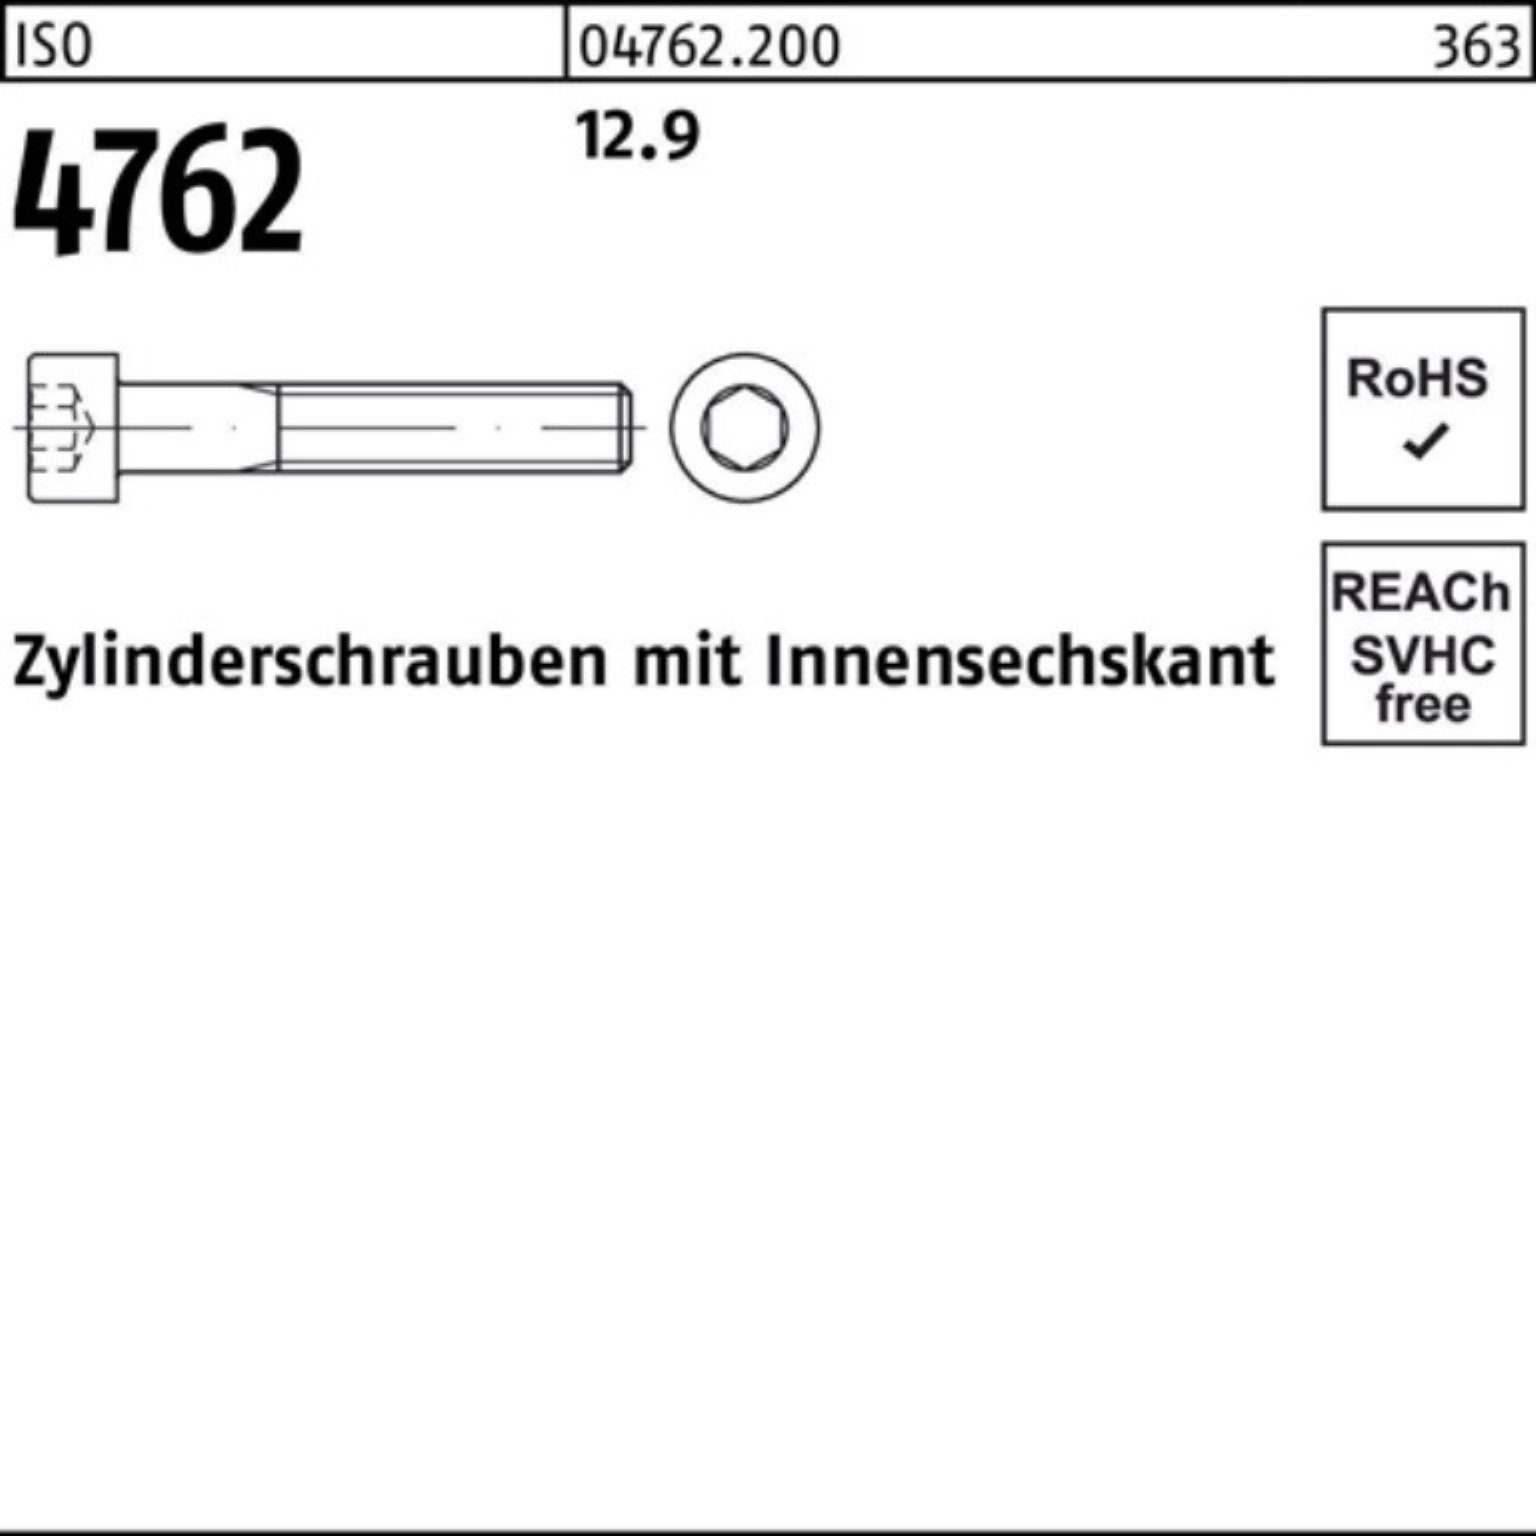 Zylinderschraube Zylinderschraube 100er 1 Pack 4762 350 Stück Reyher Innen-6kt 12.9 M20x ISO